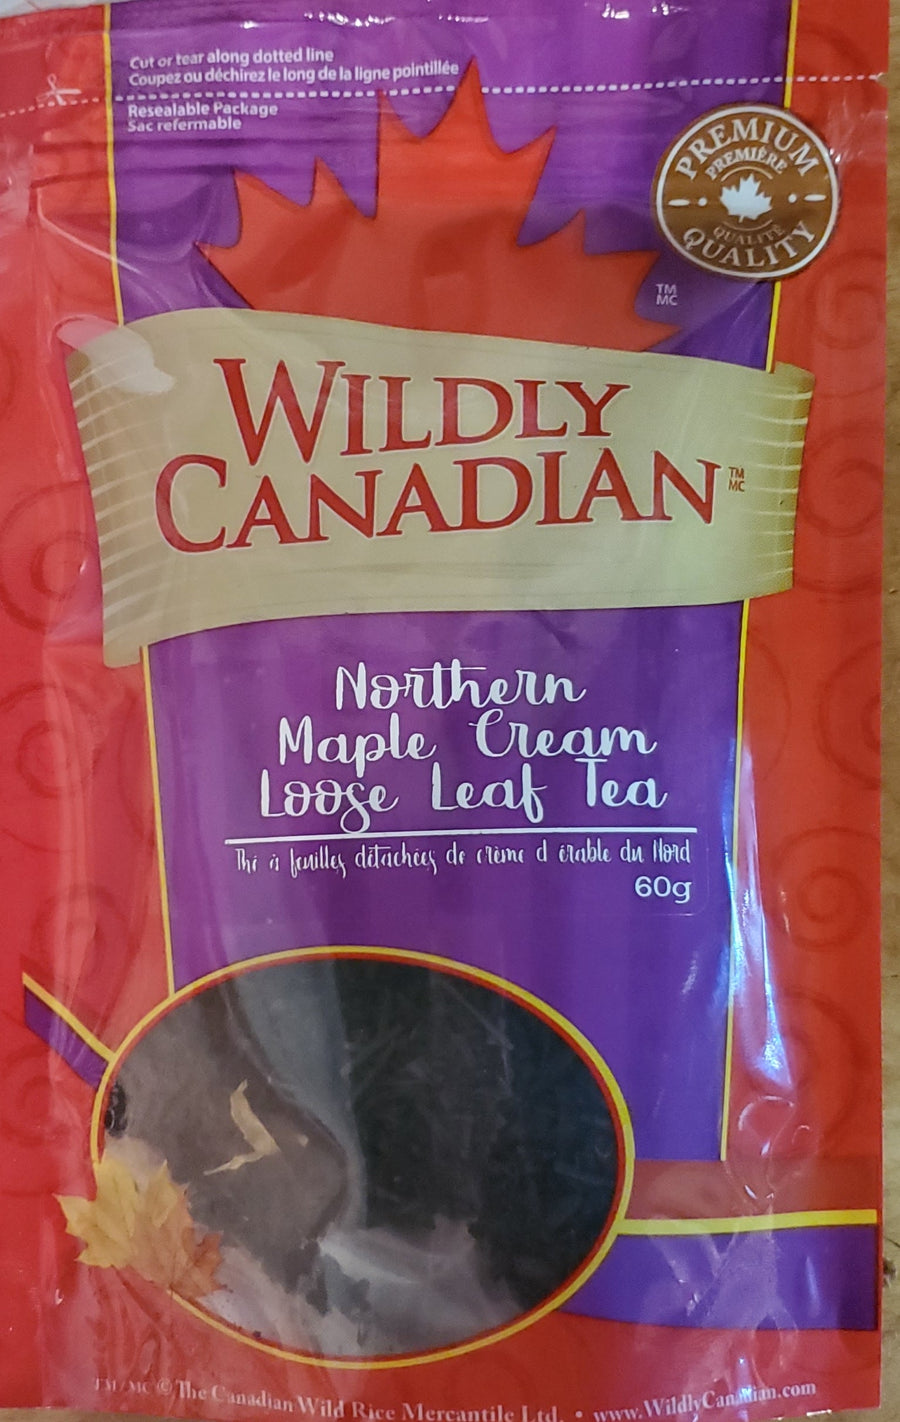 Northern Maple Cream Loose Leaf Tea